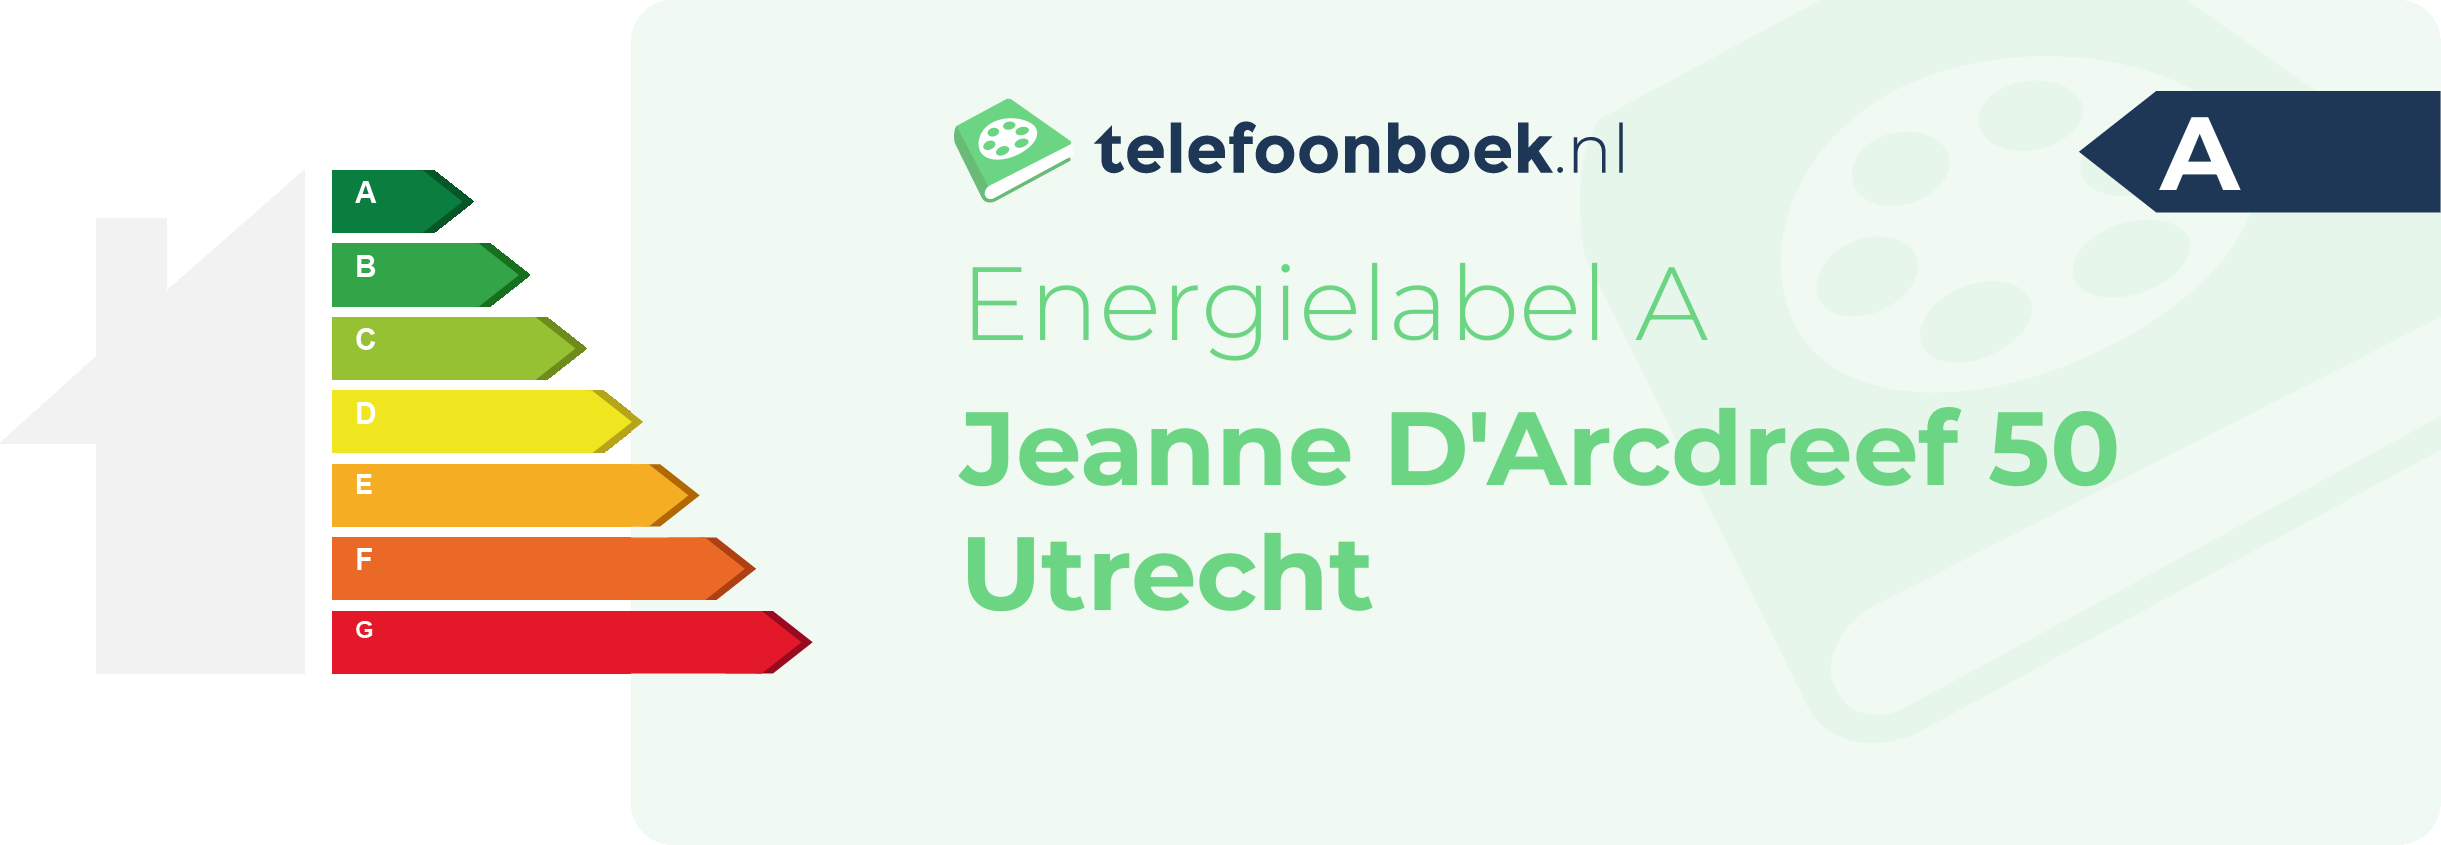 Energielabel Jeanne D'Arcdreef 50 Utrecht